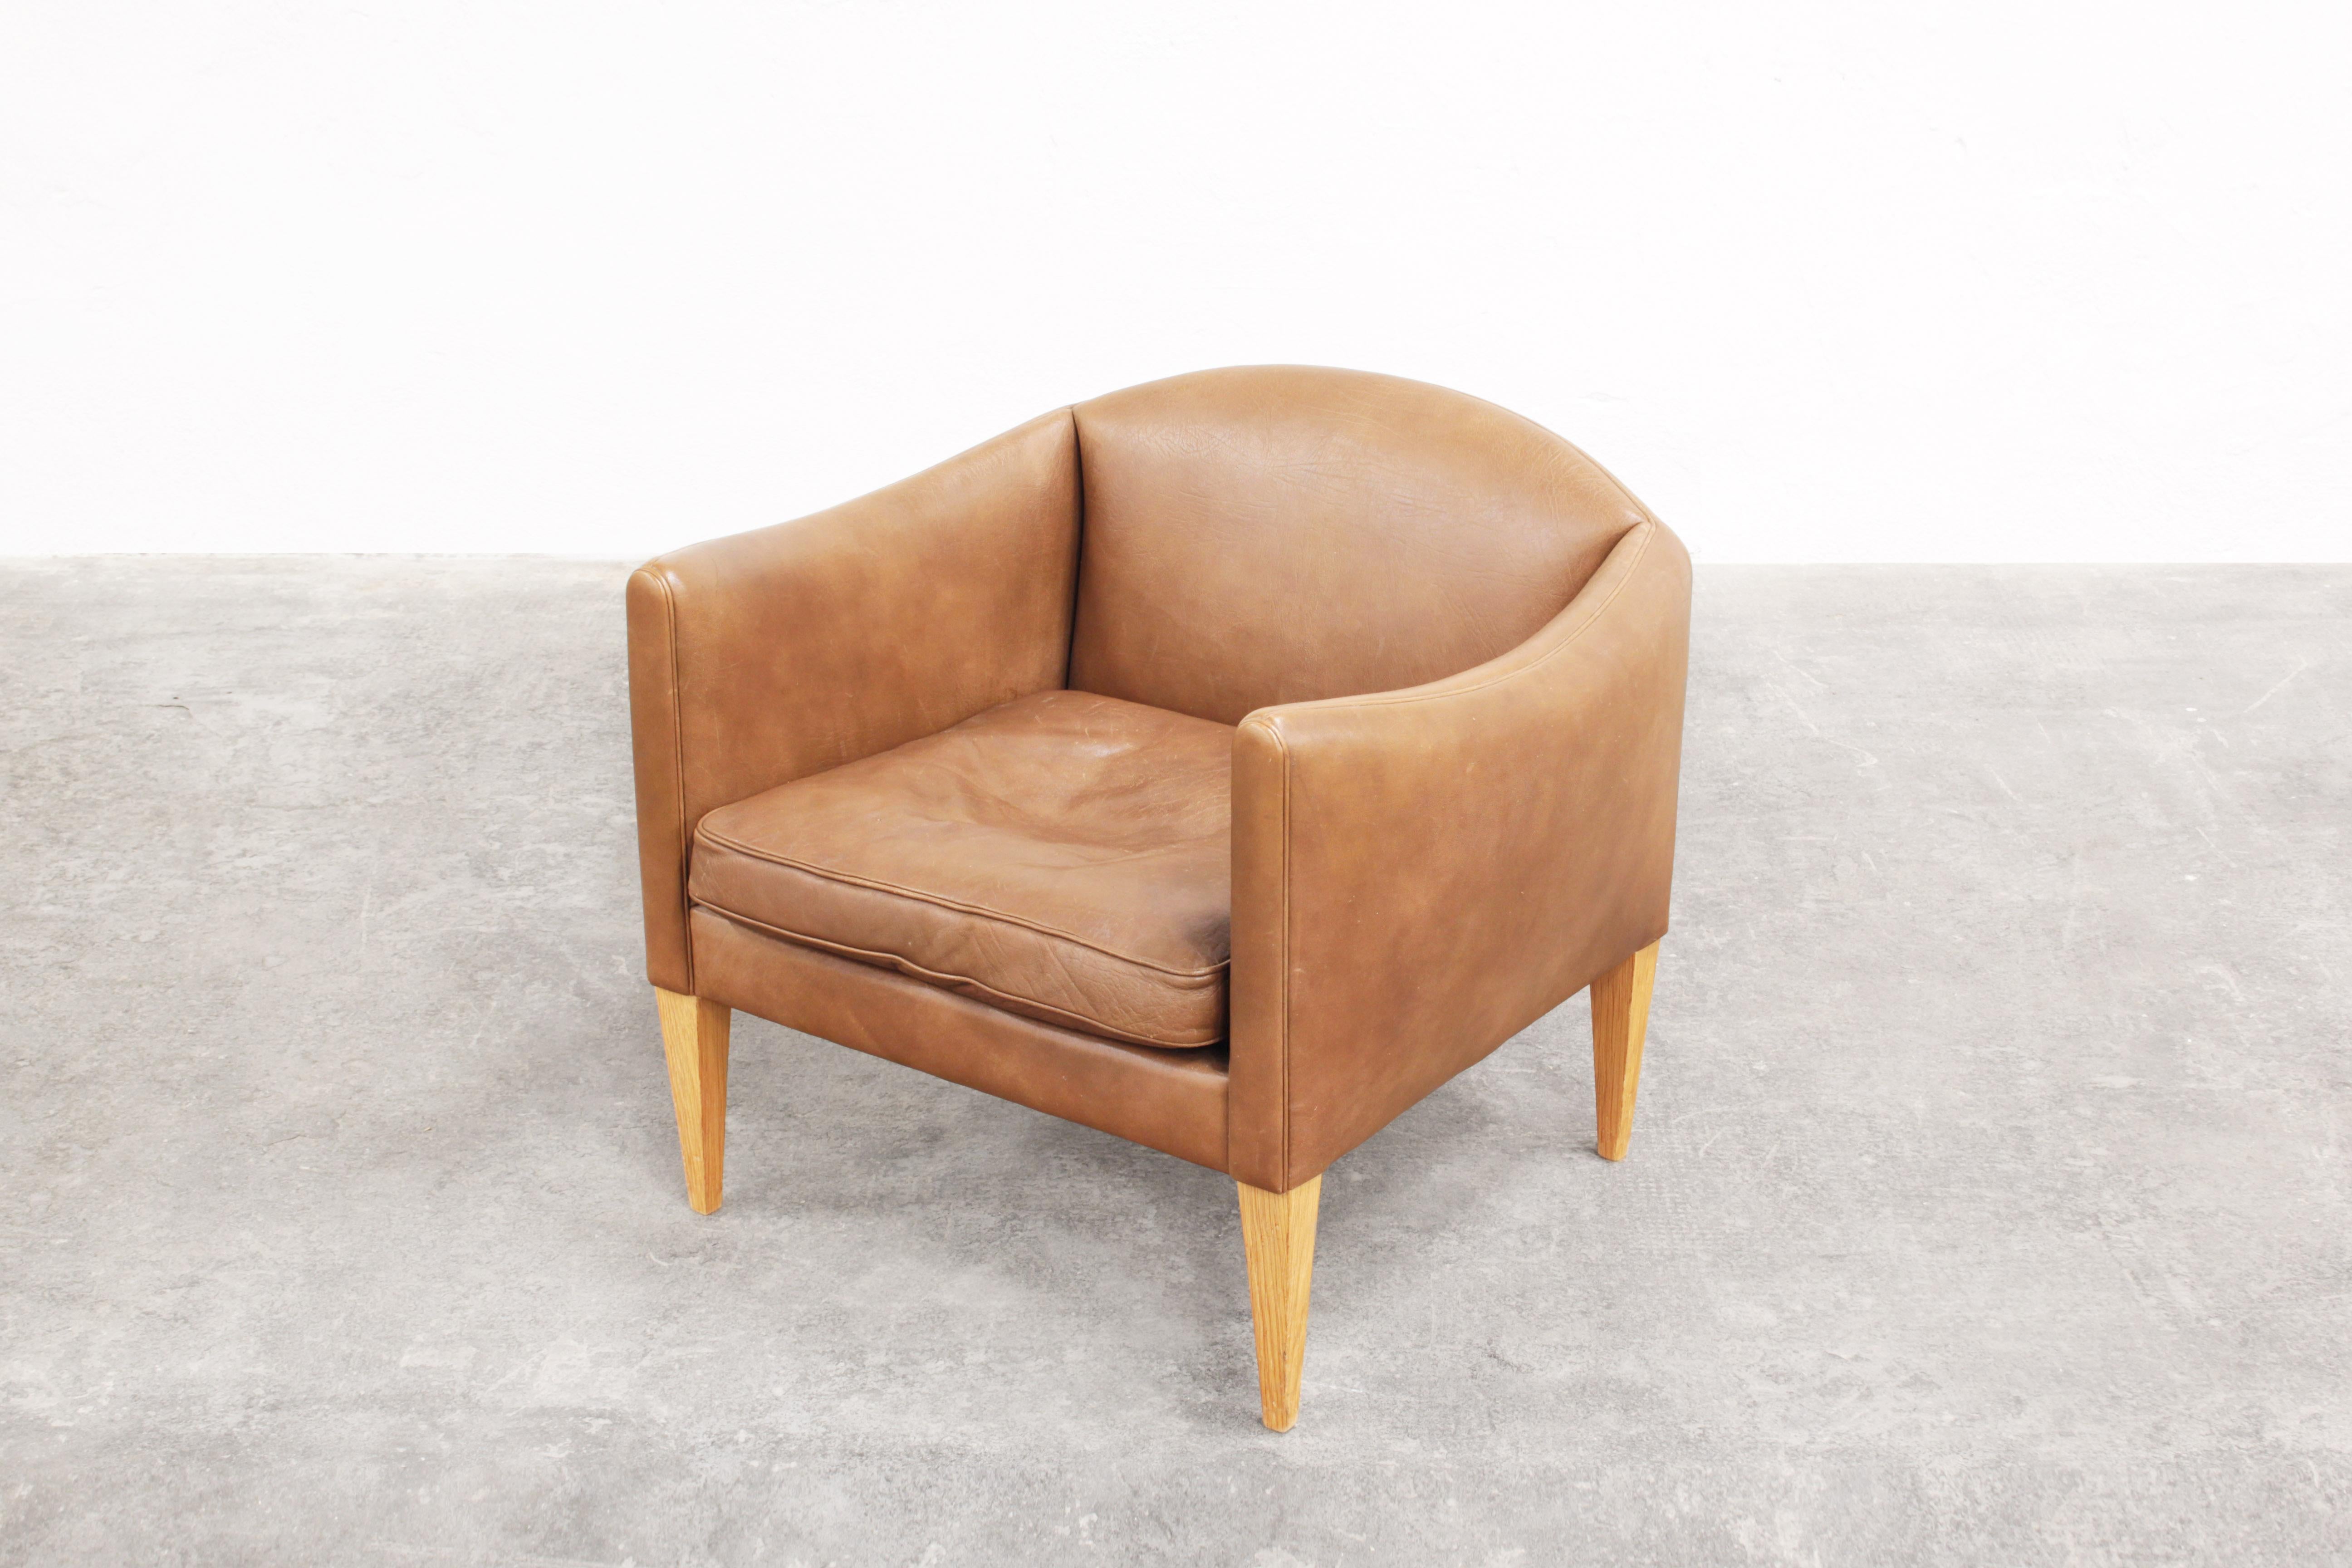 Leather Danish Lounge Chair by Illum Wikkelsø for Holger Christiansen, Denmark, 1960s For Sale